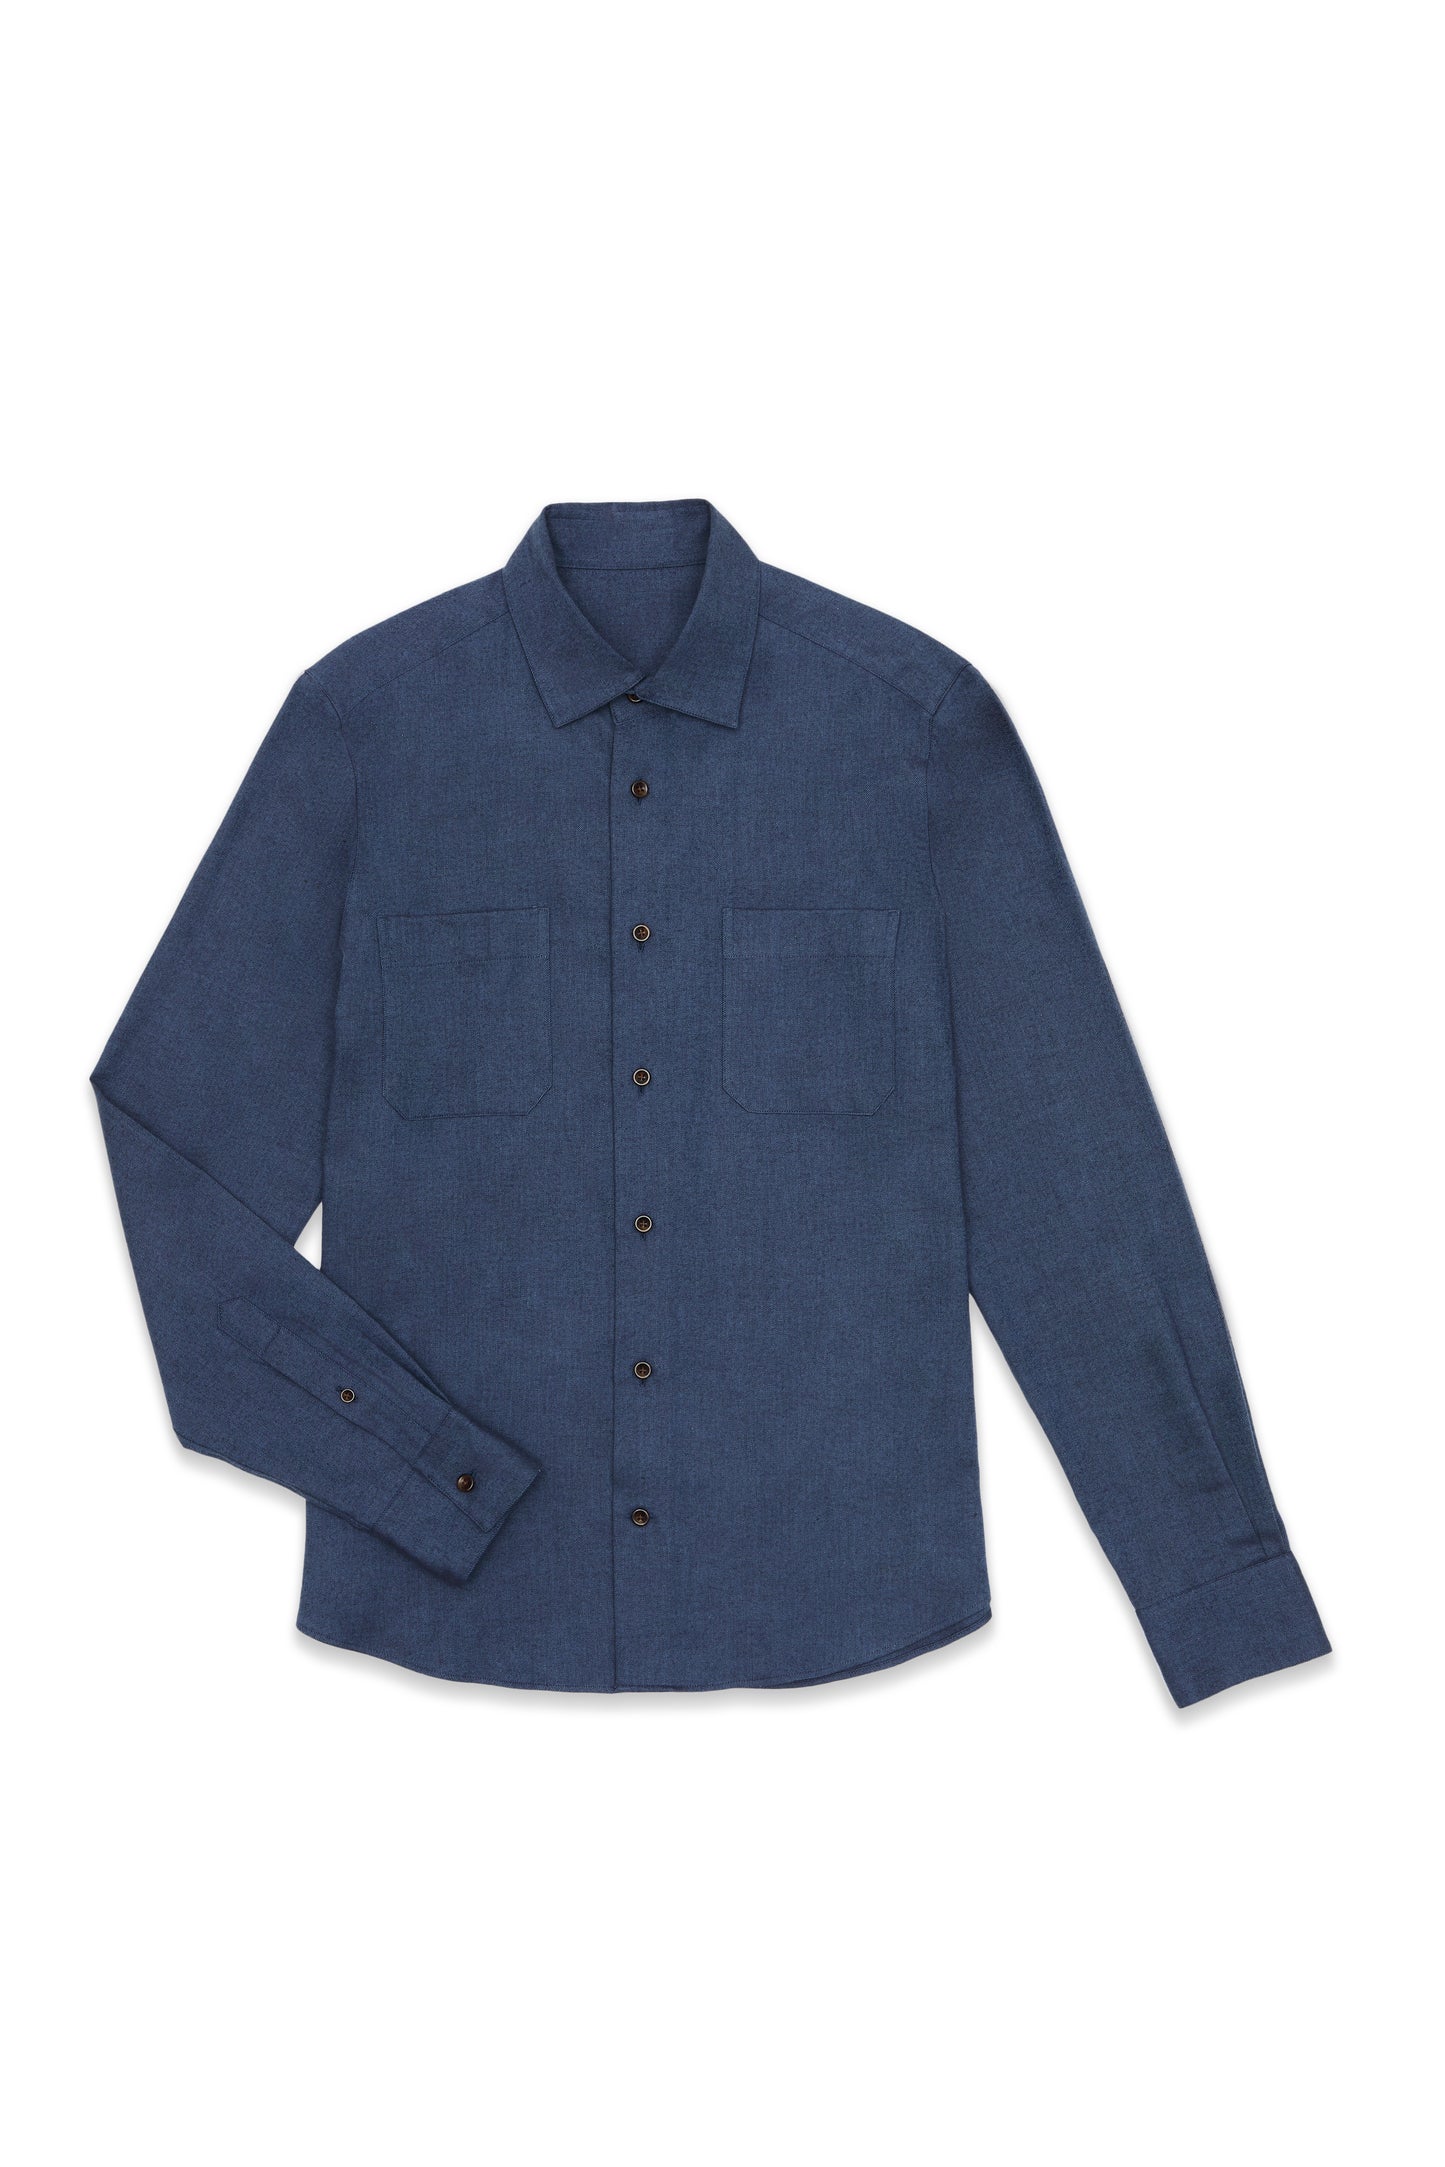 Indigo Navy Cotton/Merino Shirt